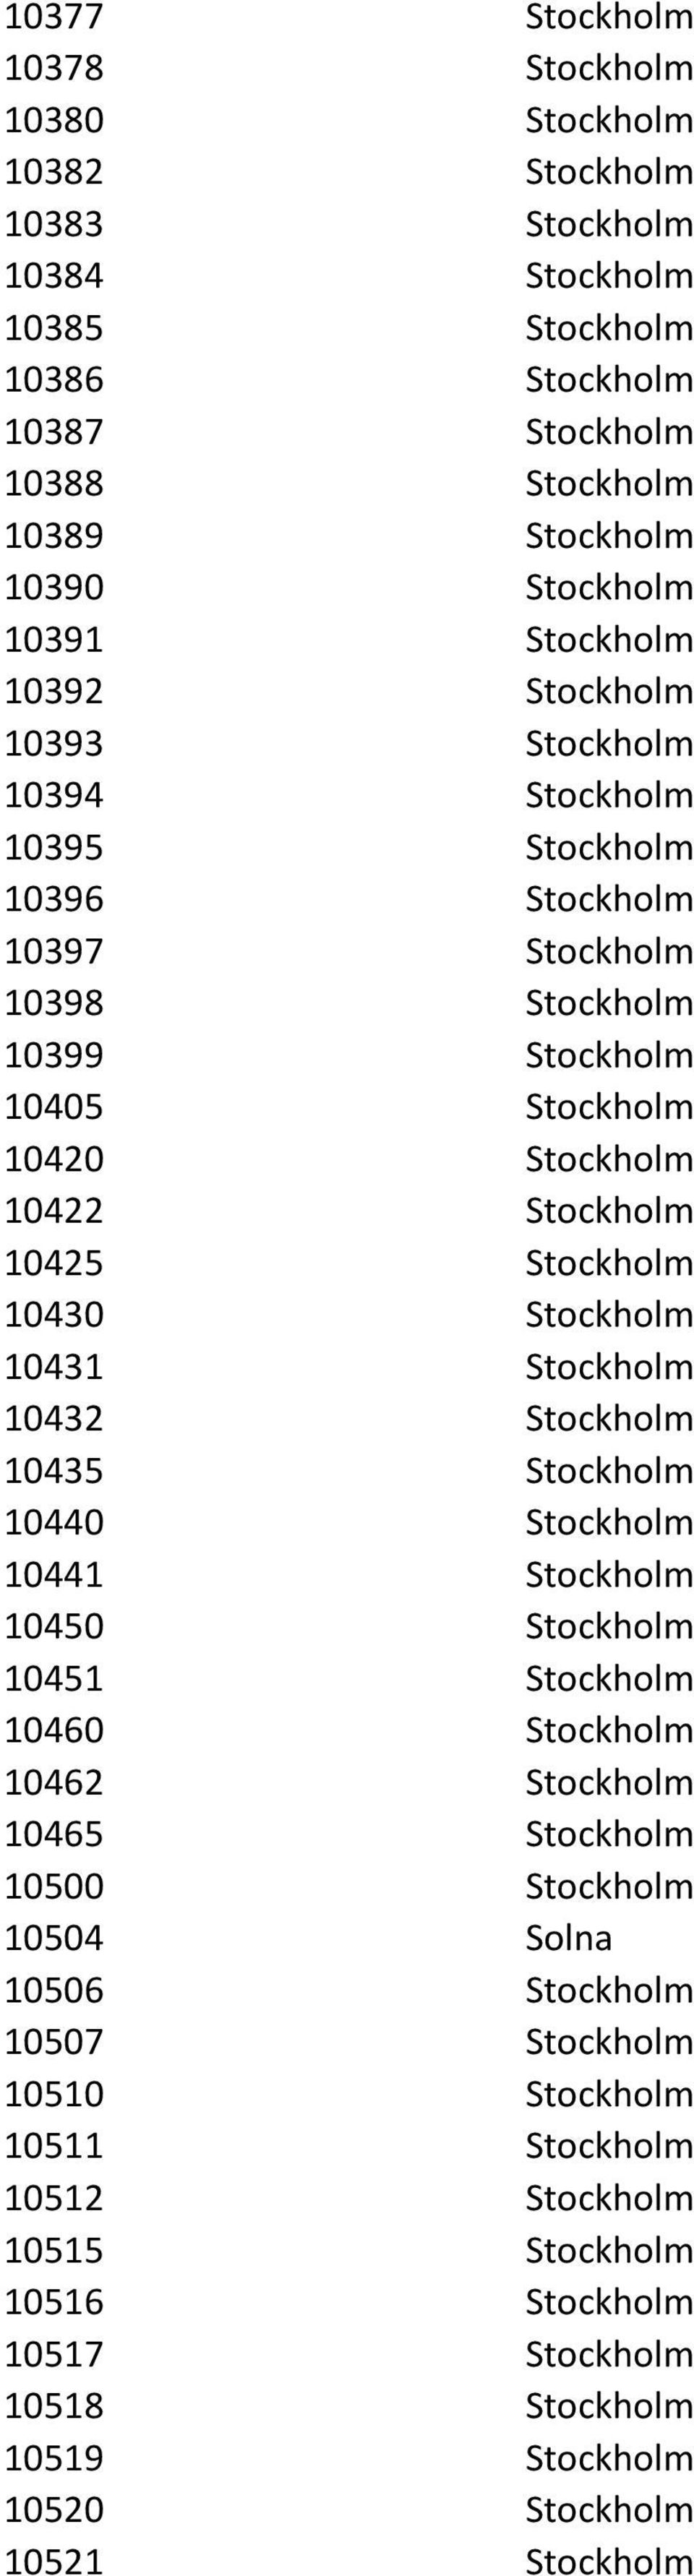 Stockholm 10430 Stockholm 10431 Stockholm 10432 Stockholm 10435 Stockholm 10440 Stockholm 10441 Stockholm 10450 Stockholm 10451 Stockholm 10460 Stockholm 10462 Stockholm 10465 Stockholm 10500